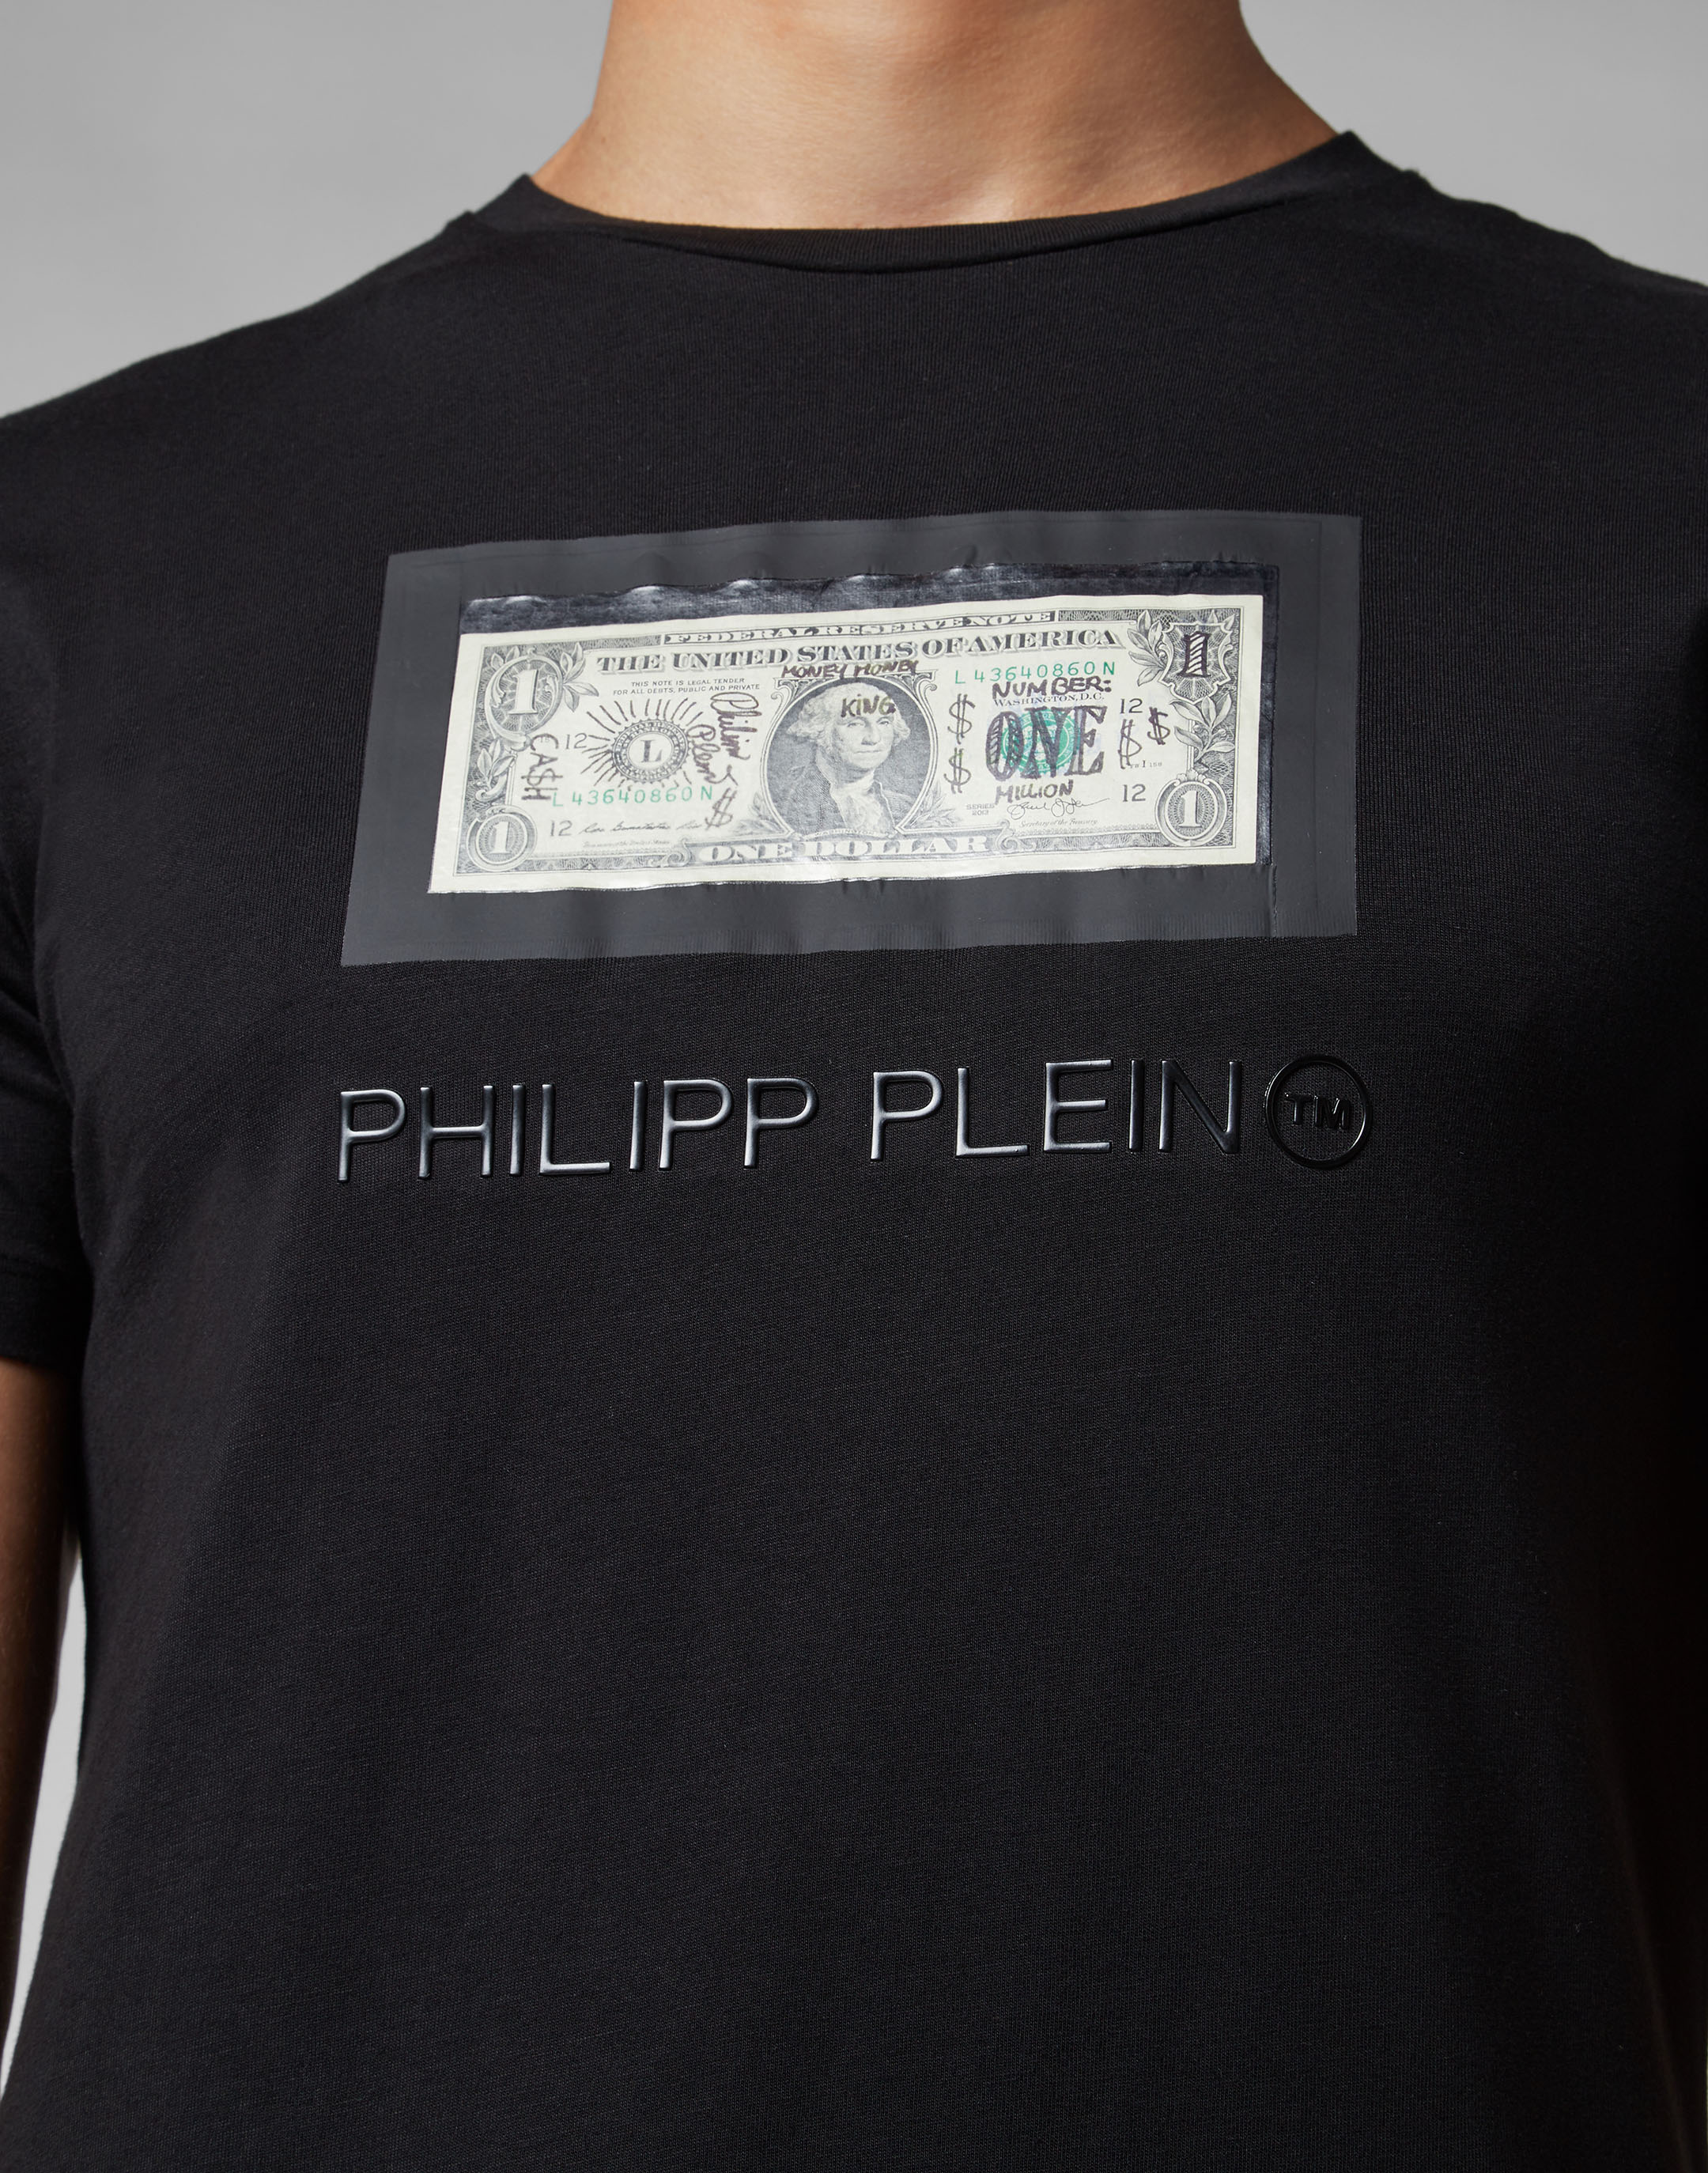 philipp plein t shirt dollar